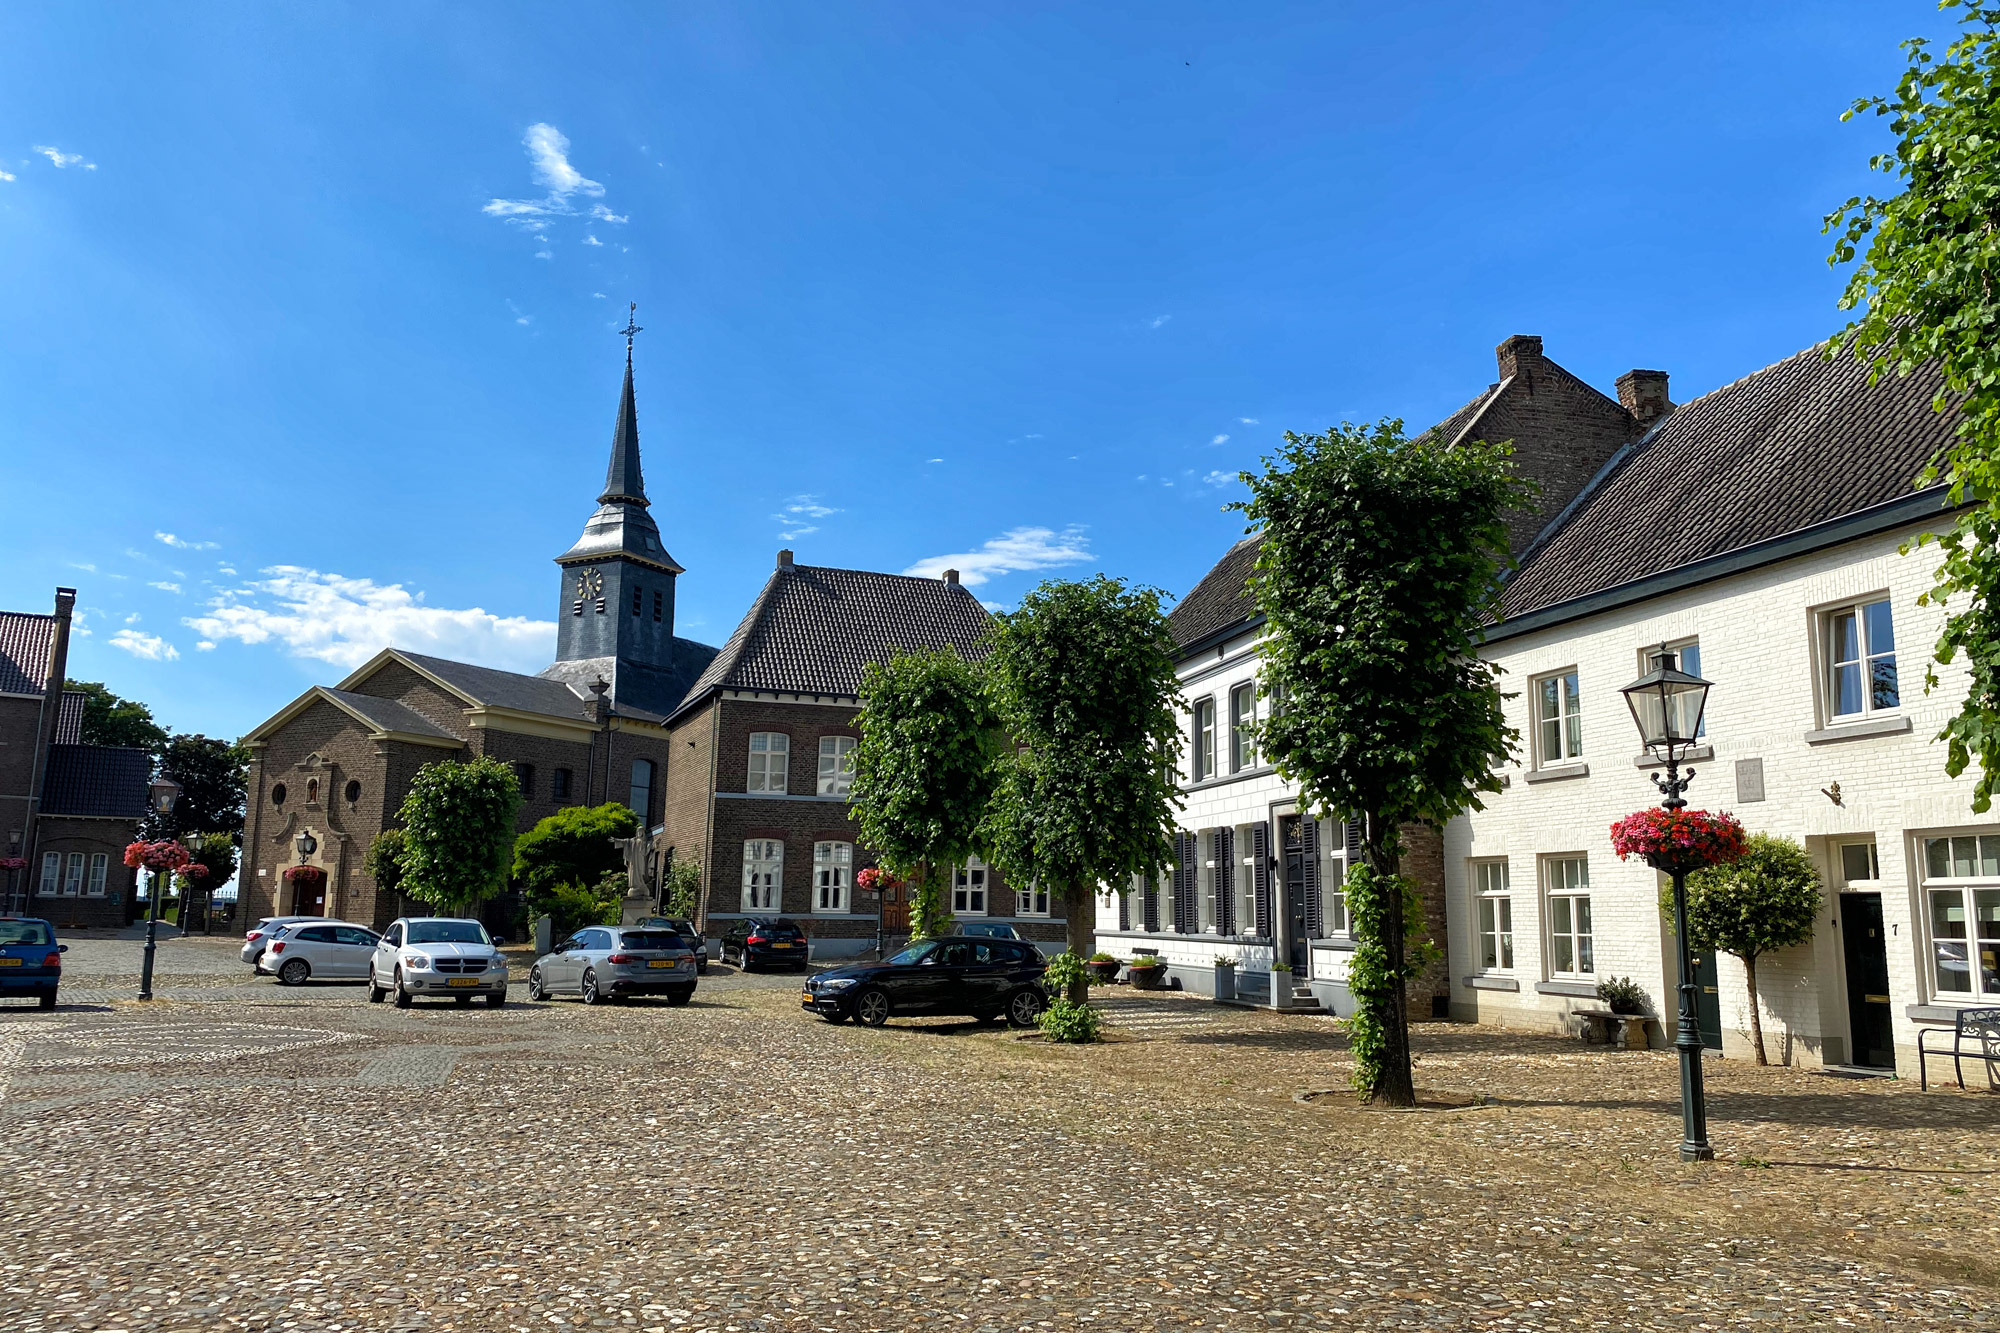 Wandelen in Limburg: Rondje om de Molenplas